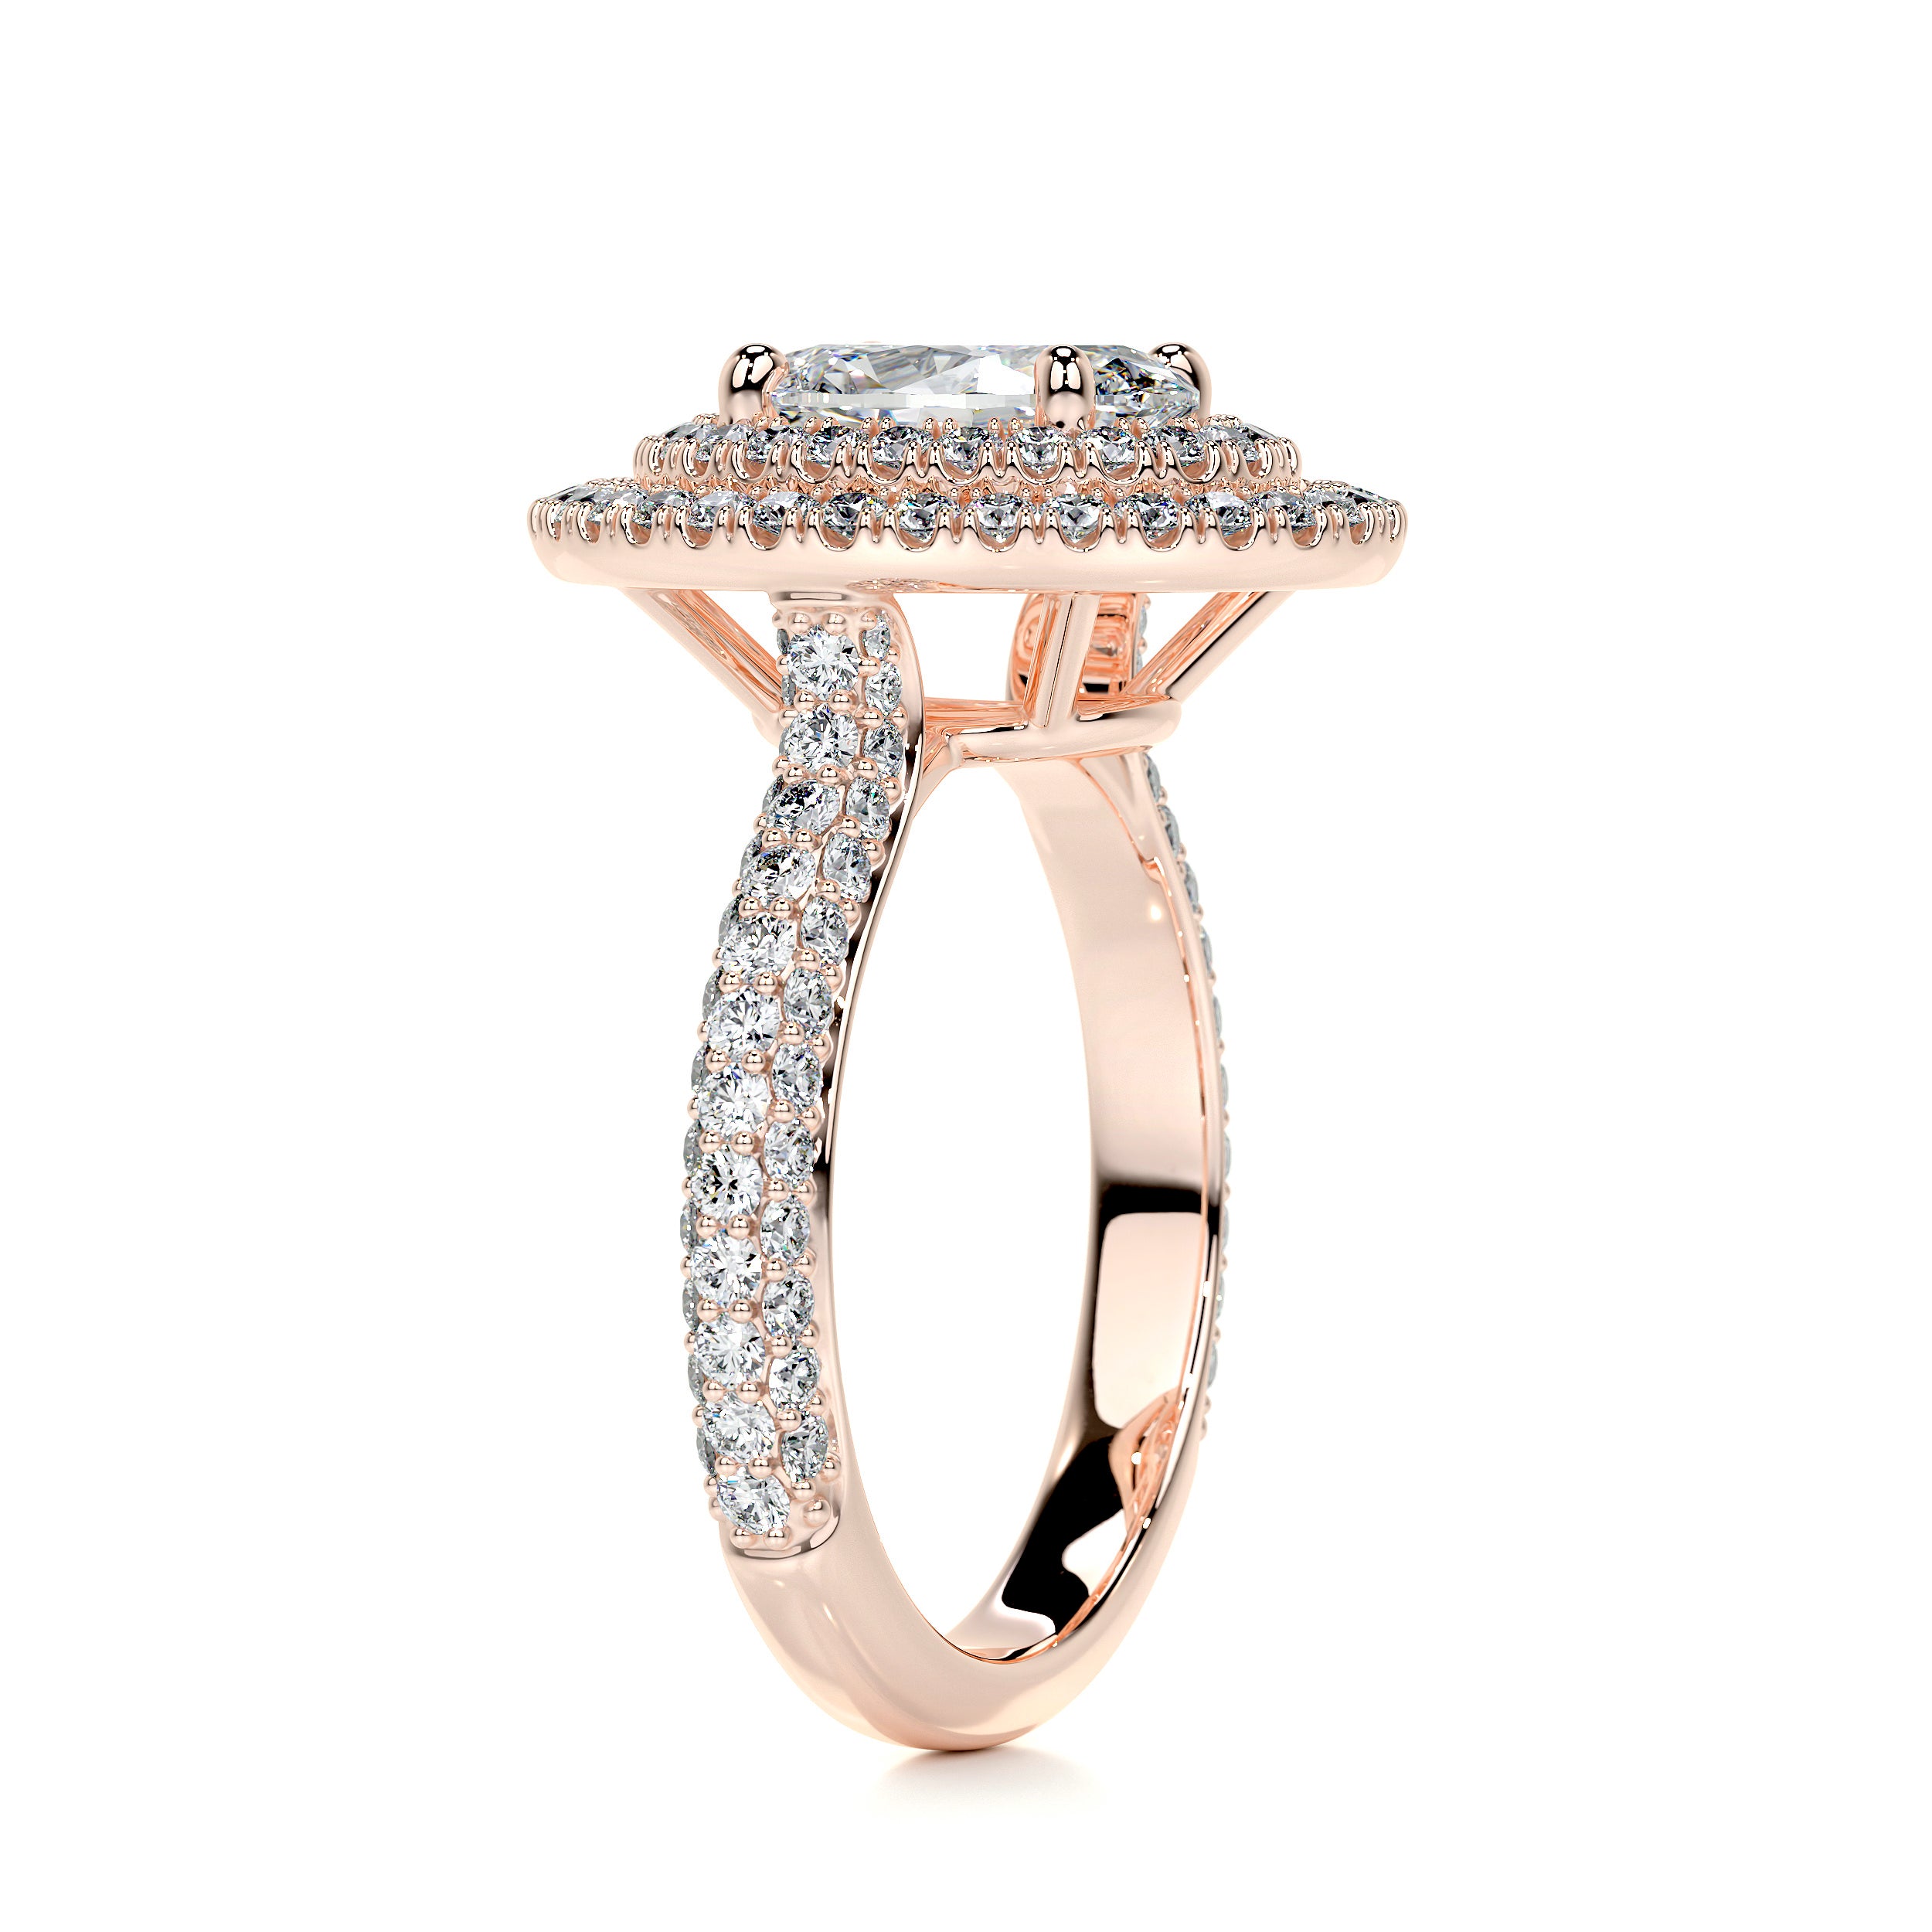 Nora Diamond Engagement Ring   (2.35 Carat) -14K Rose Gold